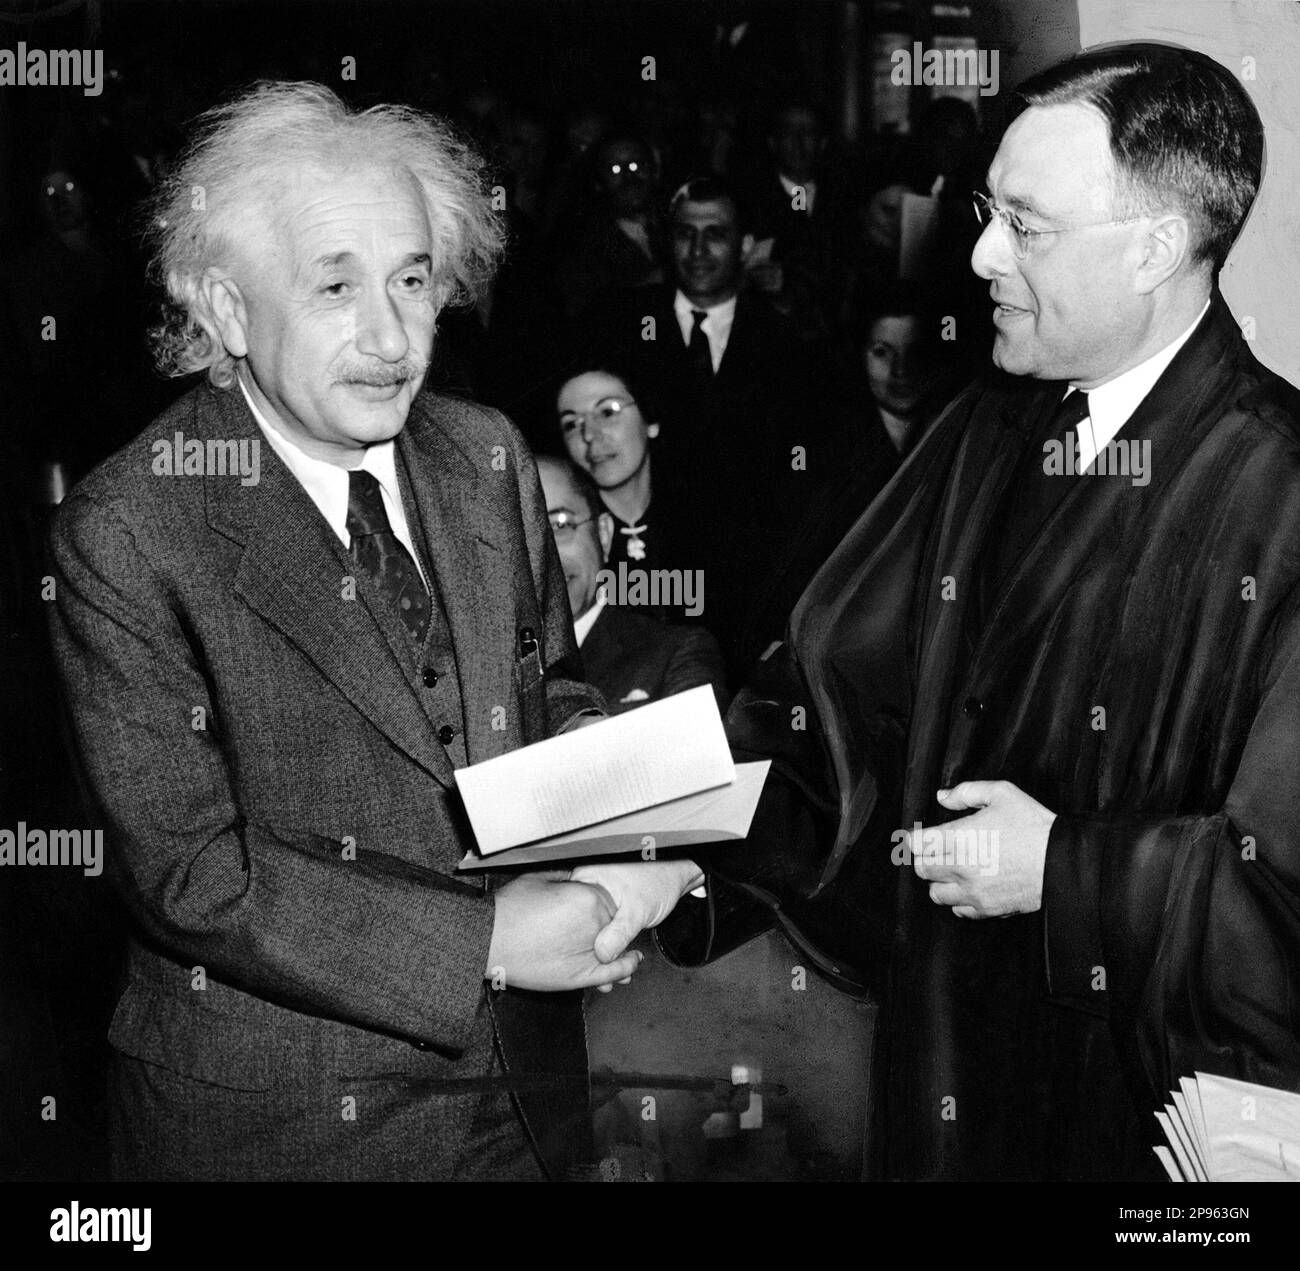 1940 , 1 . oktober , USA : der deutsche Physiker ALBERT EINSTEIN ( 1879 - 1955 ) , Nobelpreisträger 1921 . Auf diesem Foto, auf dem er sein Zertifikat über die amerikanische Staatsbürgerschaft von Richter Phillip Forman erhält .- foto Storiche - foto storica - scienziato - Wissenschaftler - Portrait - Rituto - Physik - FISICA - FISICO - SCIENZA - SCIENCE - Baffi - Schnurrbart - PREMIO NOBEL PER LA FISICA - Atomica - Atomo - scienziato - Genius - genio - Krawatte - Cravatta - certificato di cittadinanza --- Archivio GBB Stockfoto